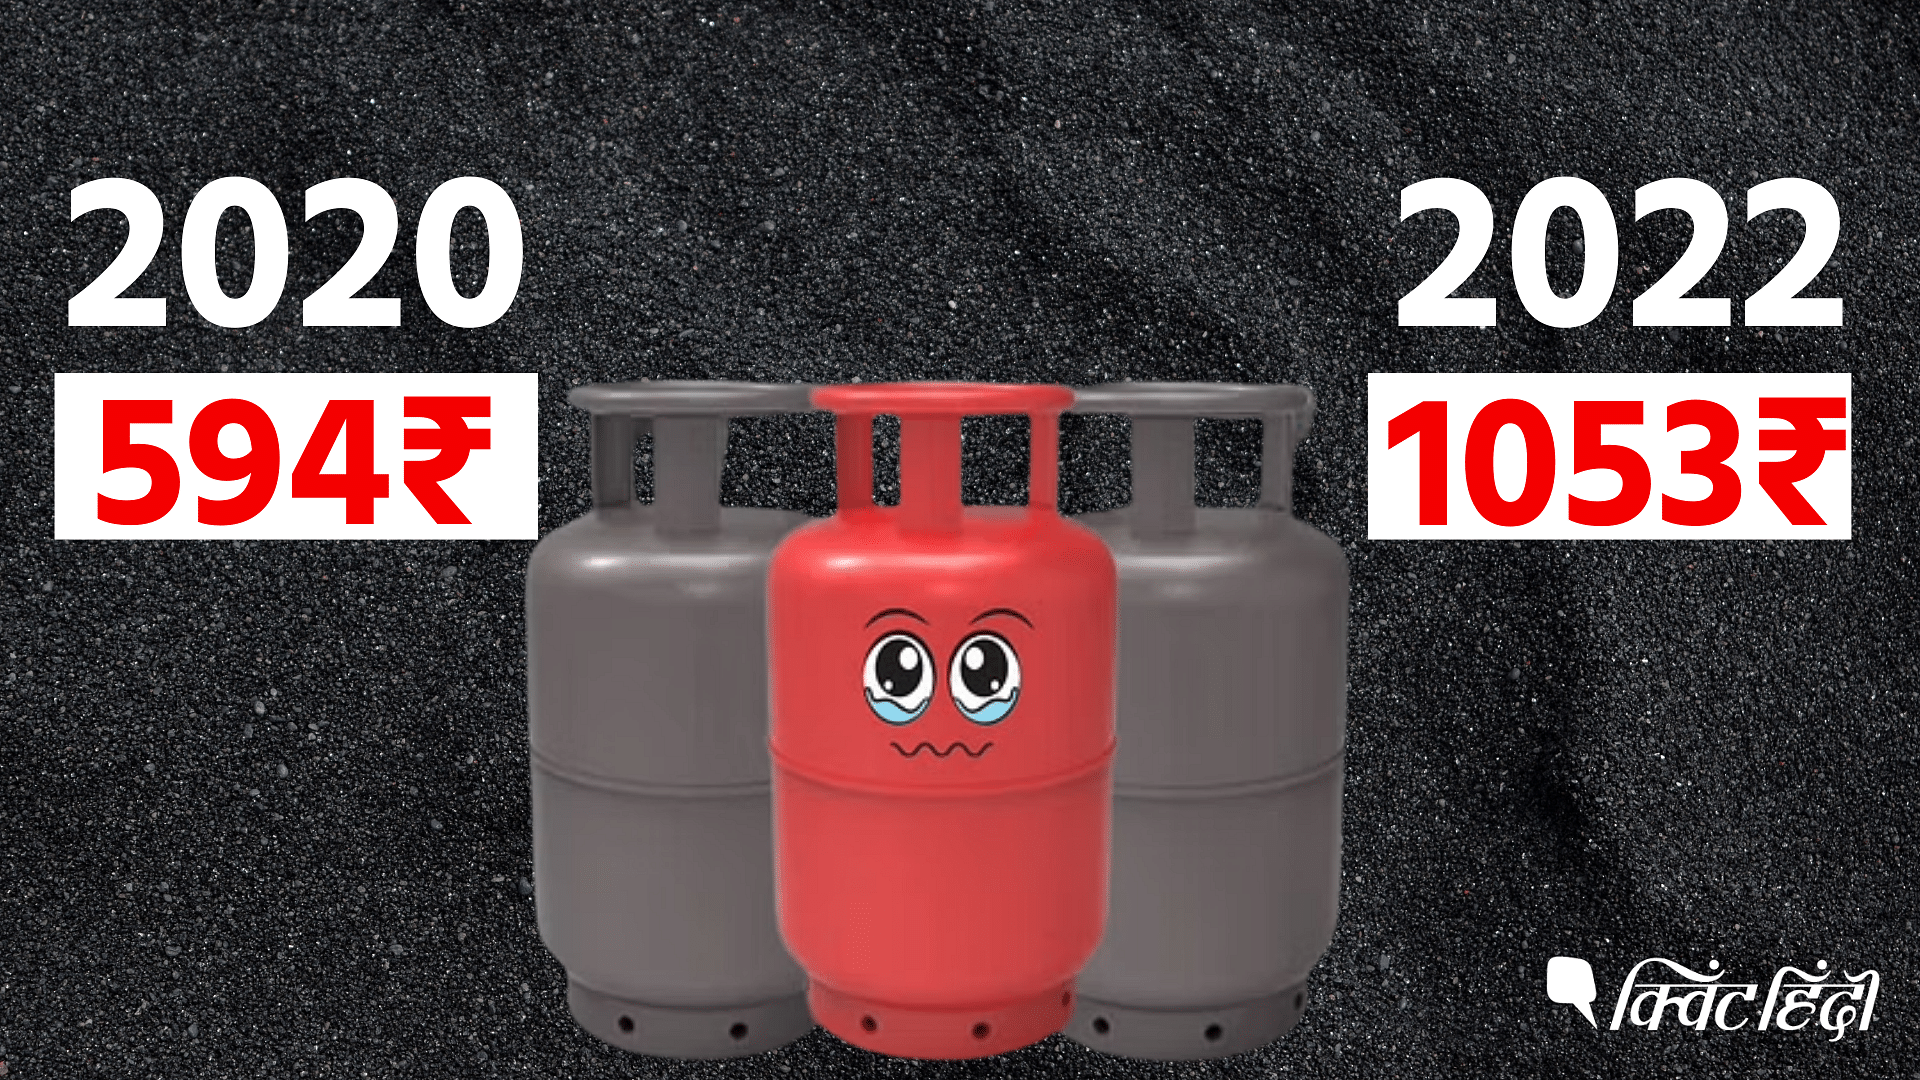 <div class="paragraphs"><p>Domestic LPG Cylinder के दामों में बढ़ोतरी, पिछले एक साल में कितने बदले रेट?</p></div>